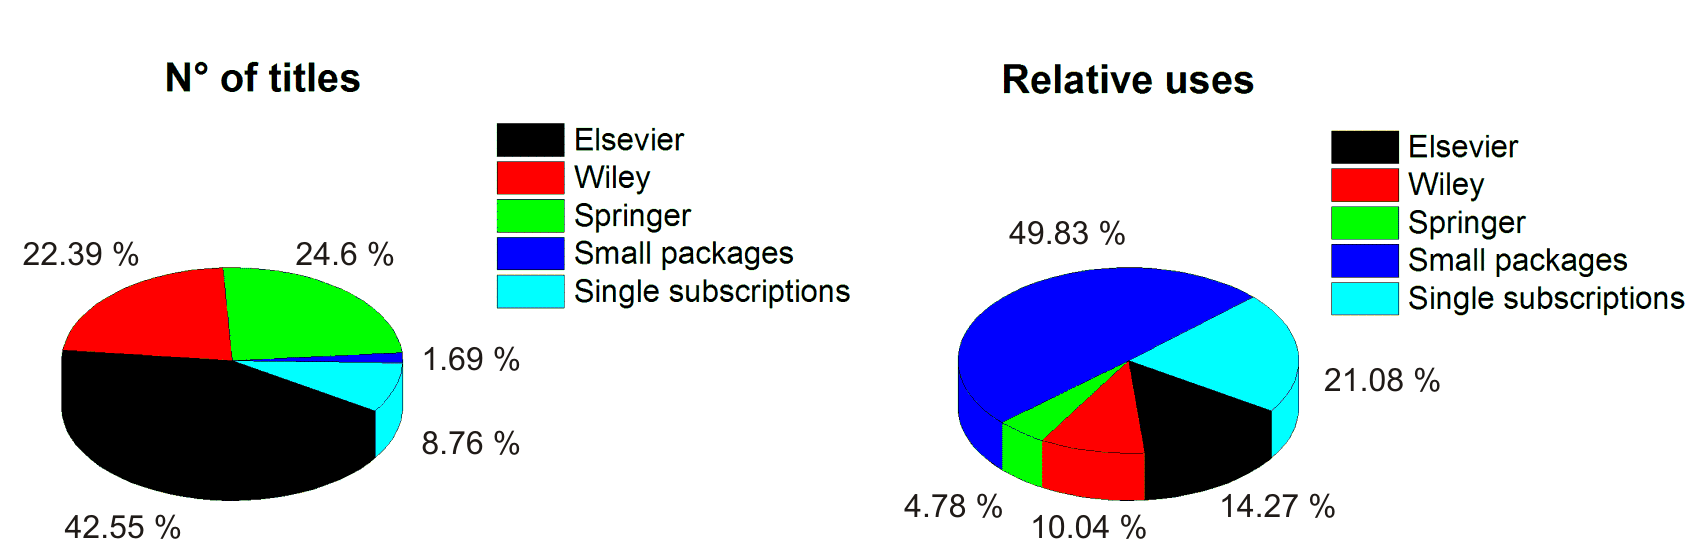 Vergleich verschiedener Lizenzmodelle im STM-Bereich Big Deals haben den höchsten Anteil an Zeitschriftentiteln (90%), aber verzeichnen nur 29% der relativen Gesamtnutzung kleine Pakete (IOP